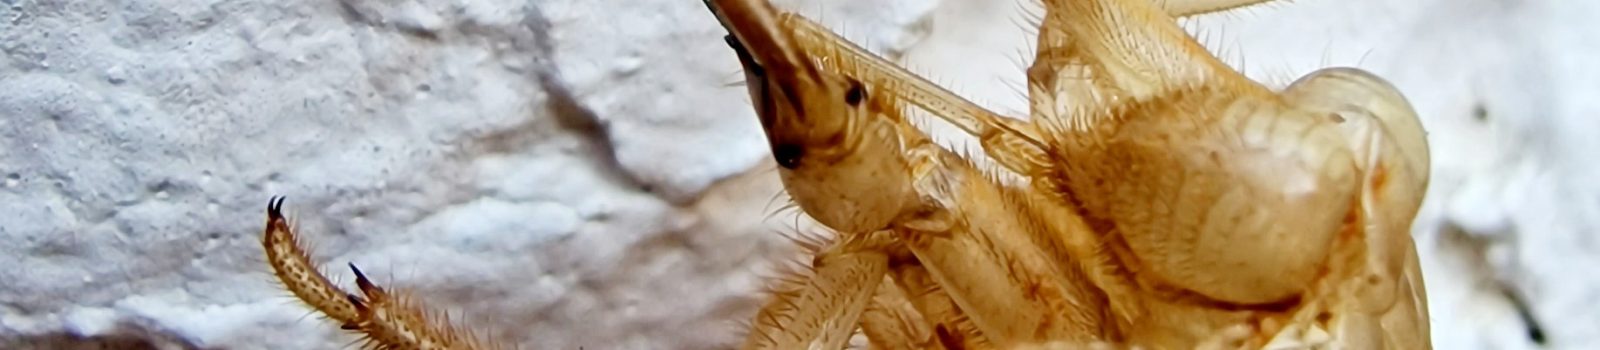 Haut einer Zikade